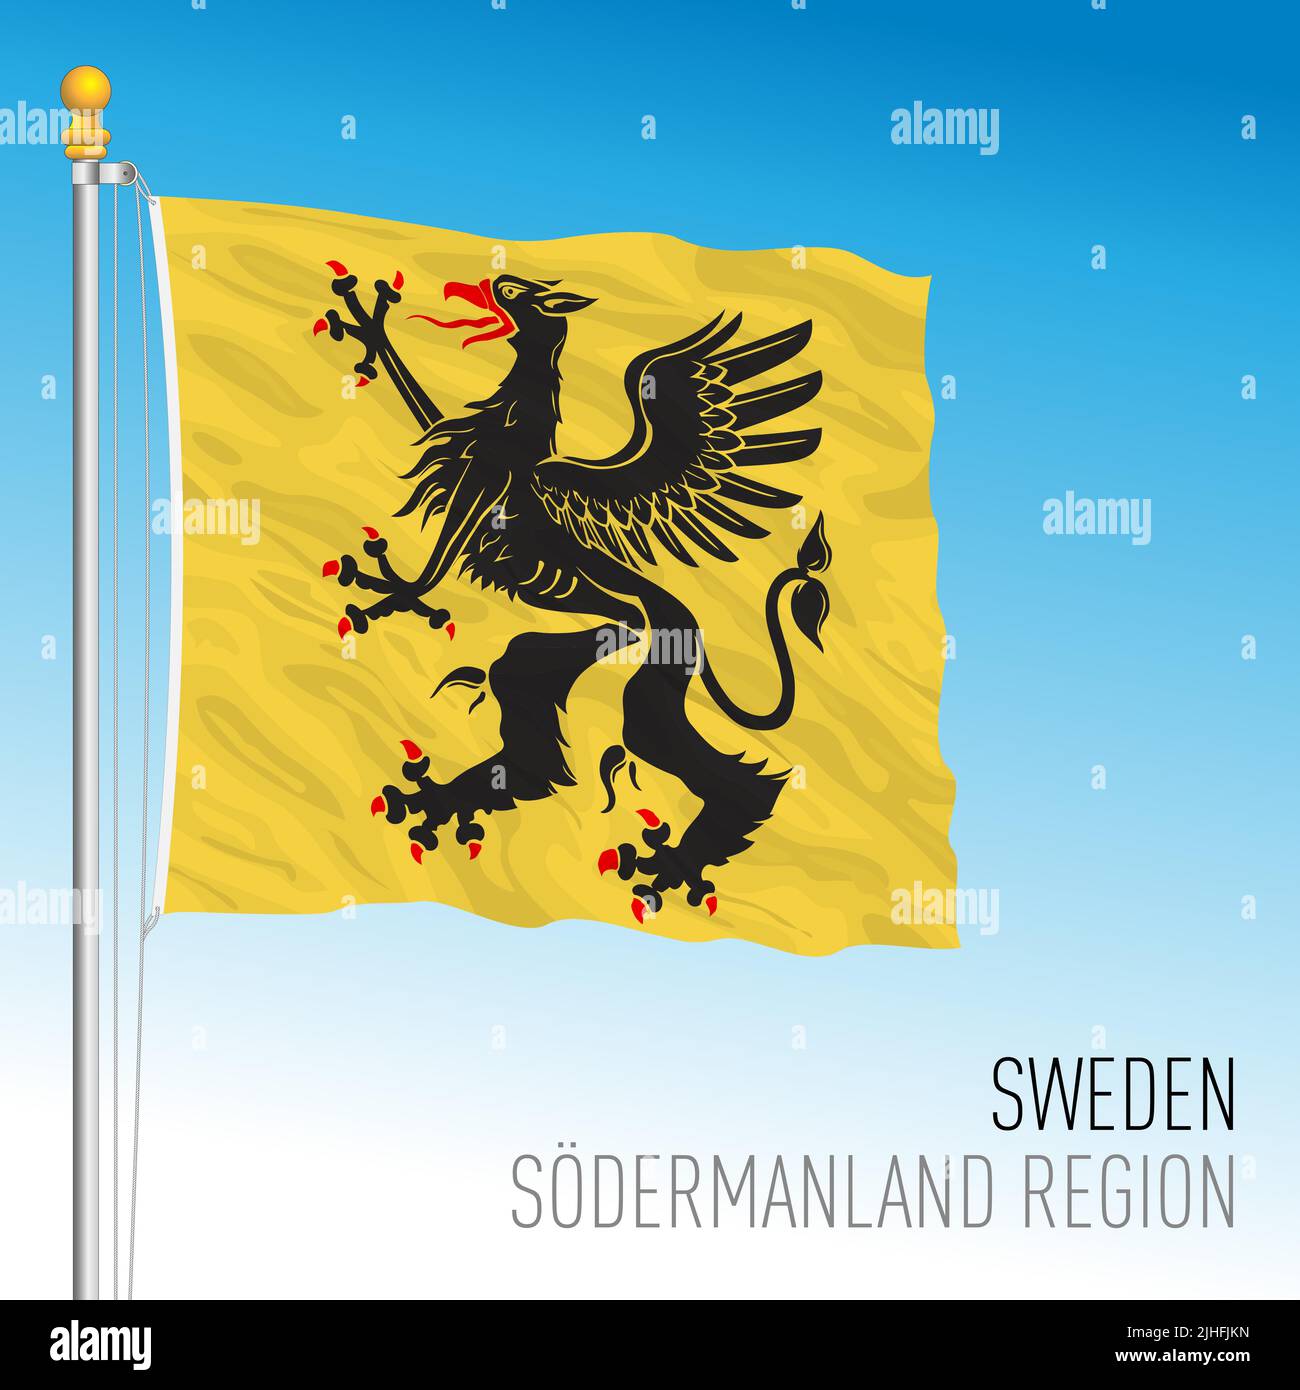 Pabellón regional del condado de Sodermanland, Reino de Suecia, ilustración de vectores Ilustración del Vector